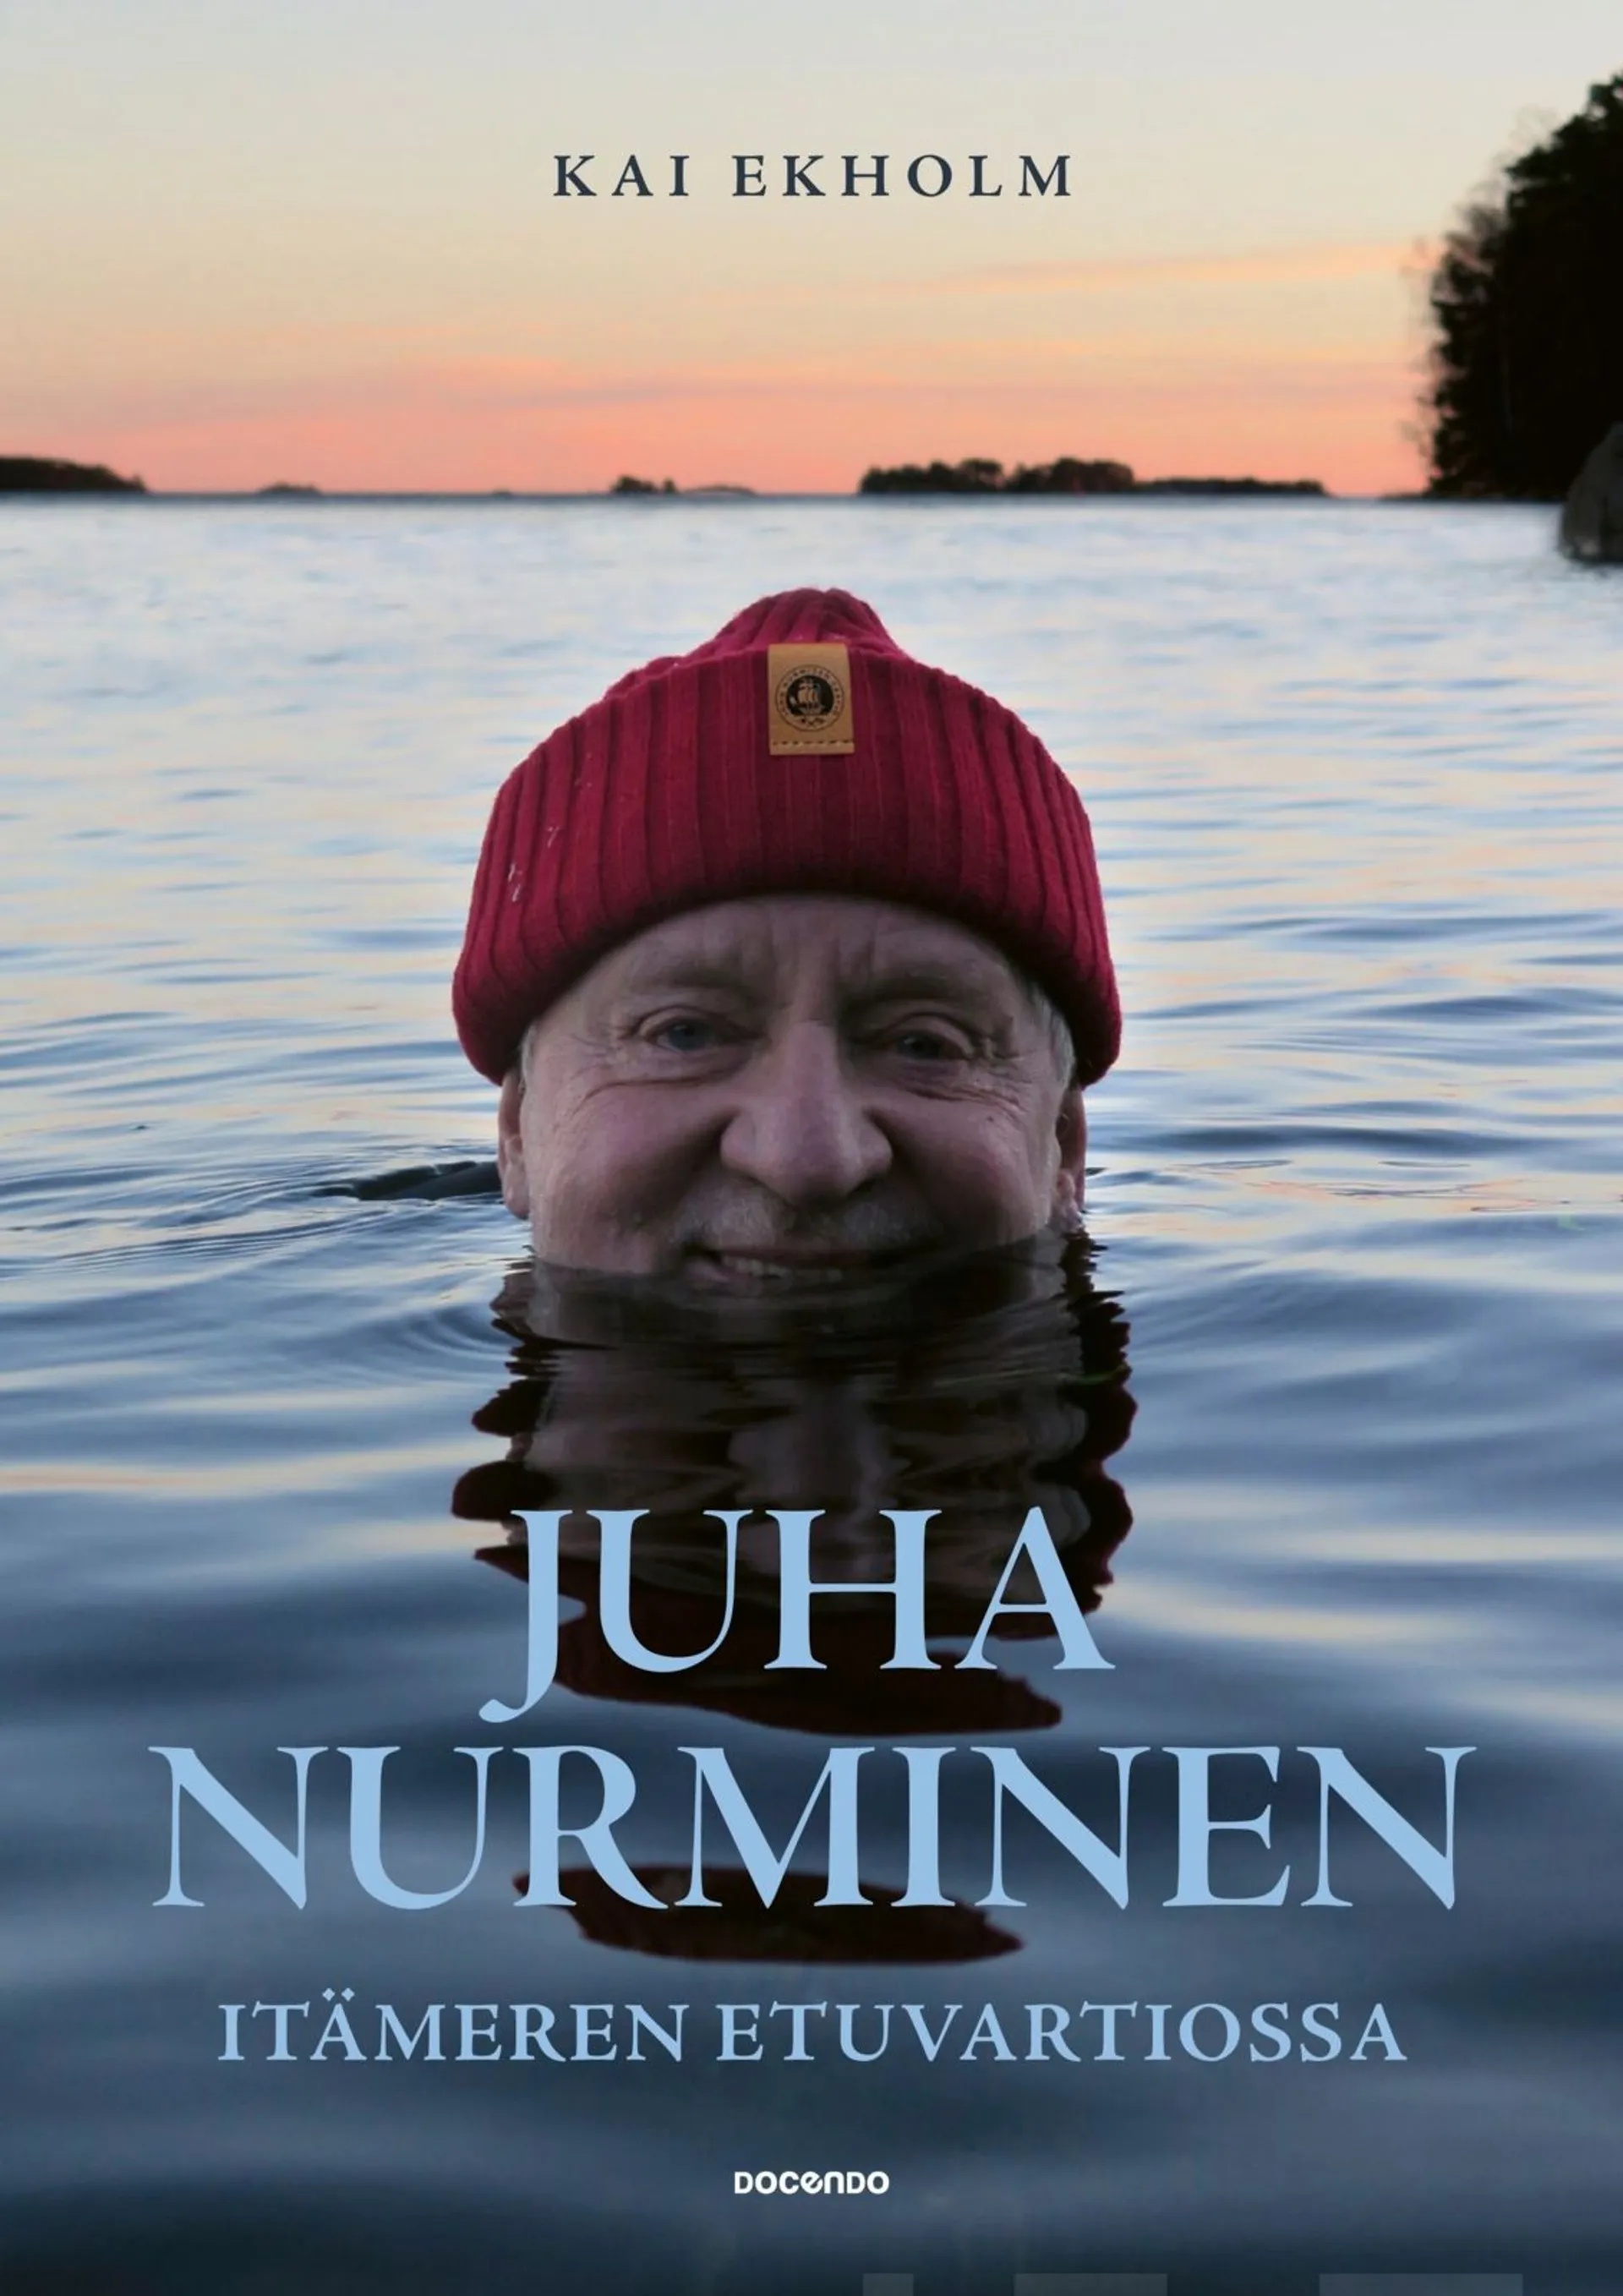 Ekholm, Juha Nurminen – Itämeren etuvartiossa